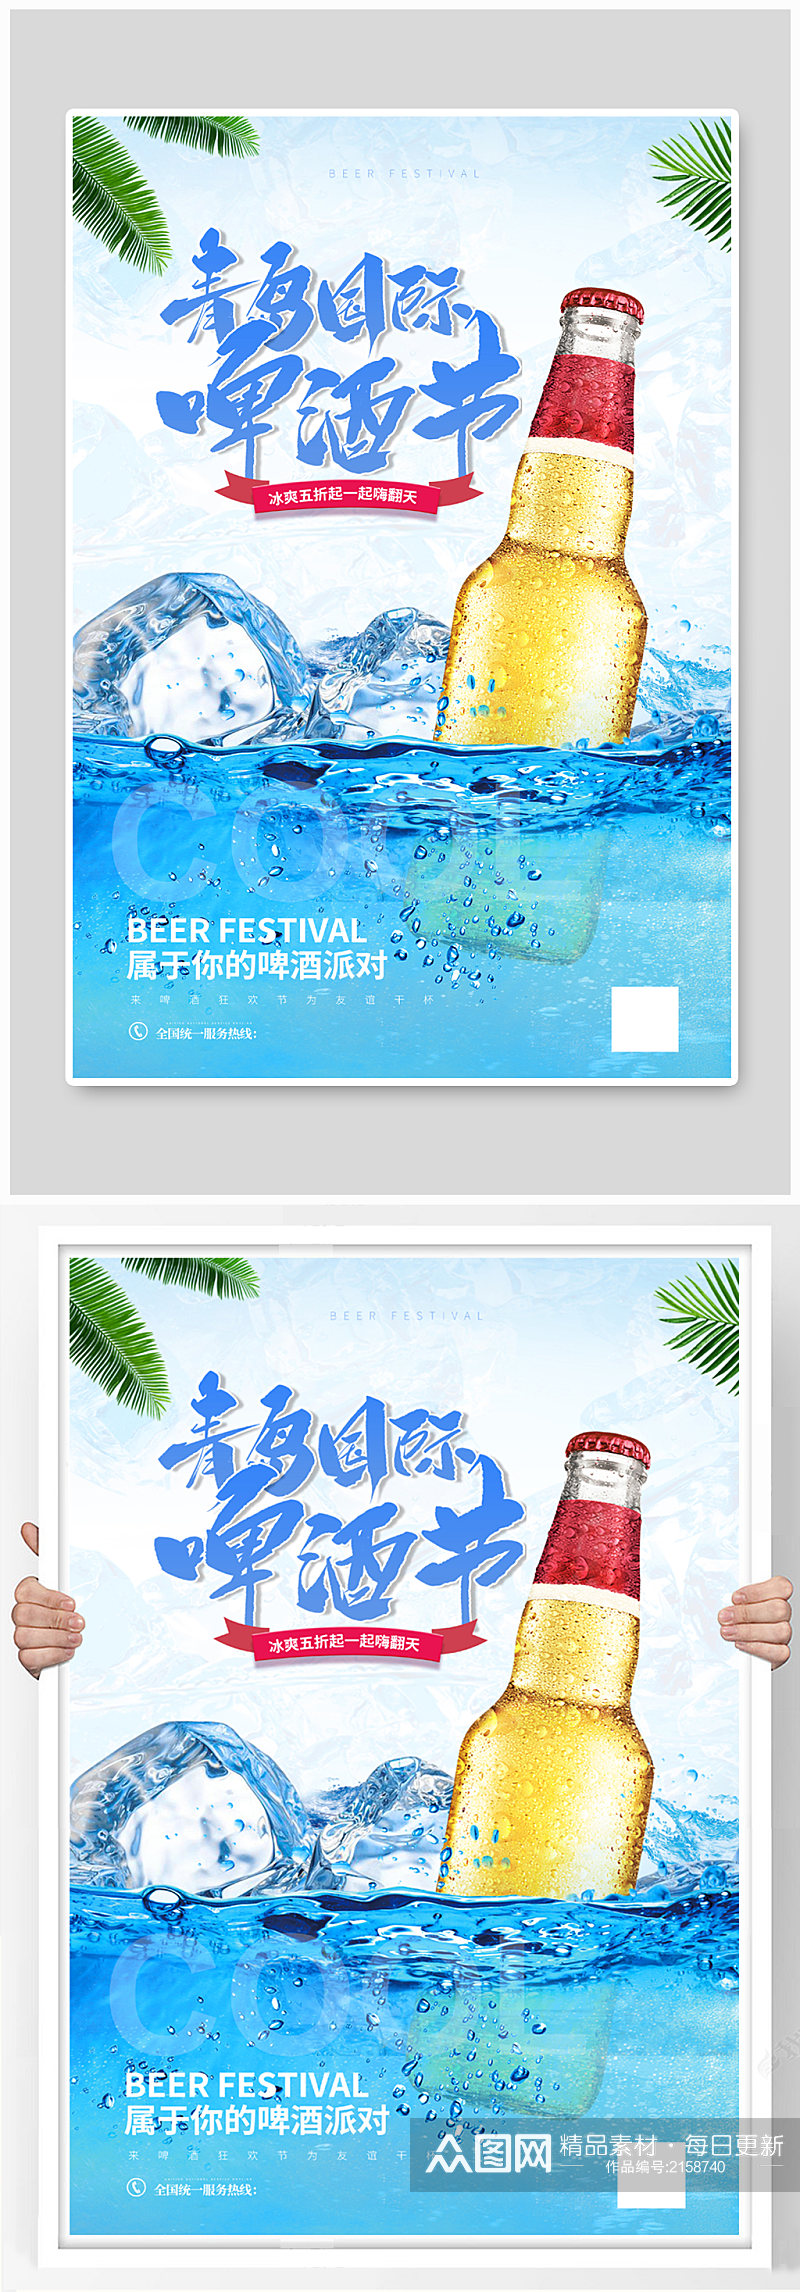 青岛国际啤酒节宣传海报素材